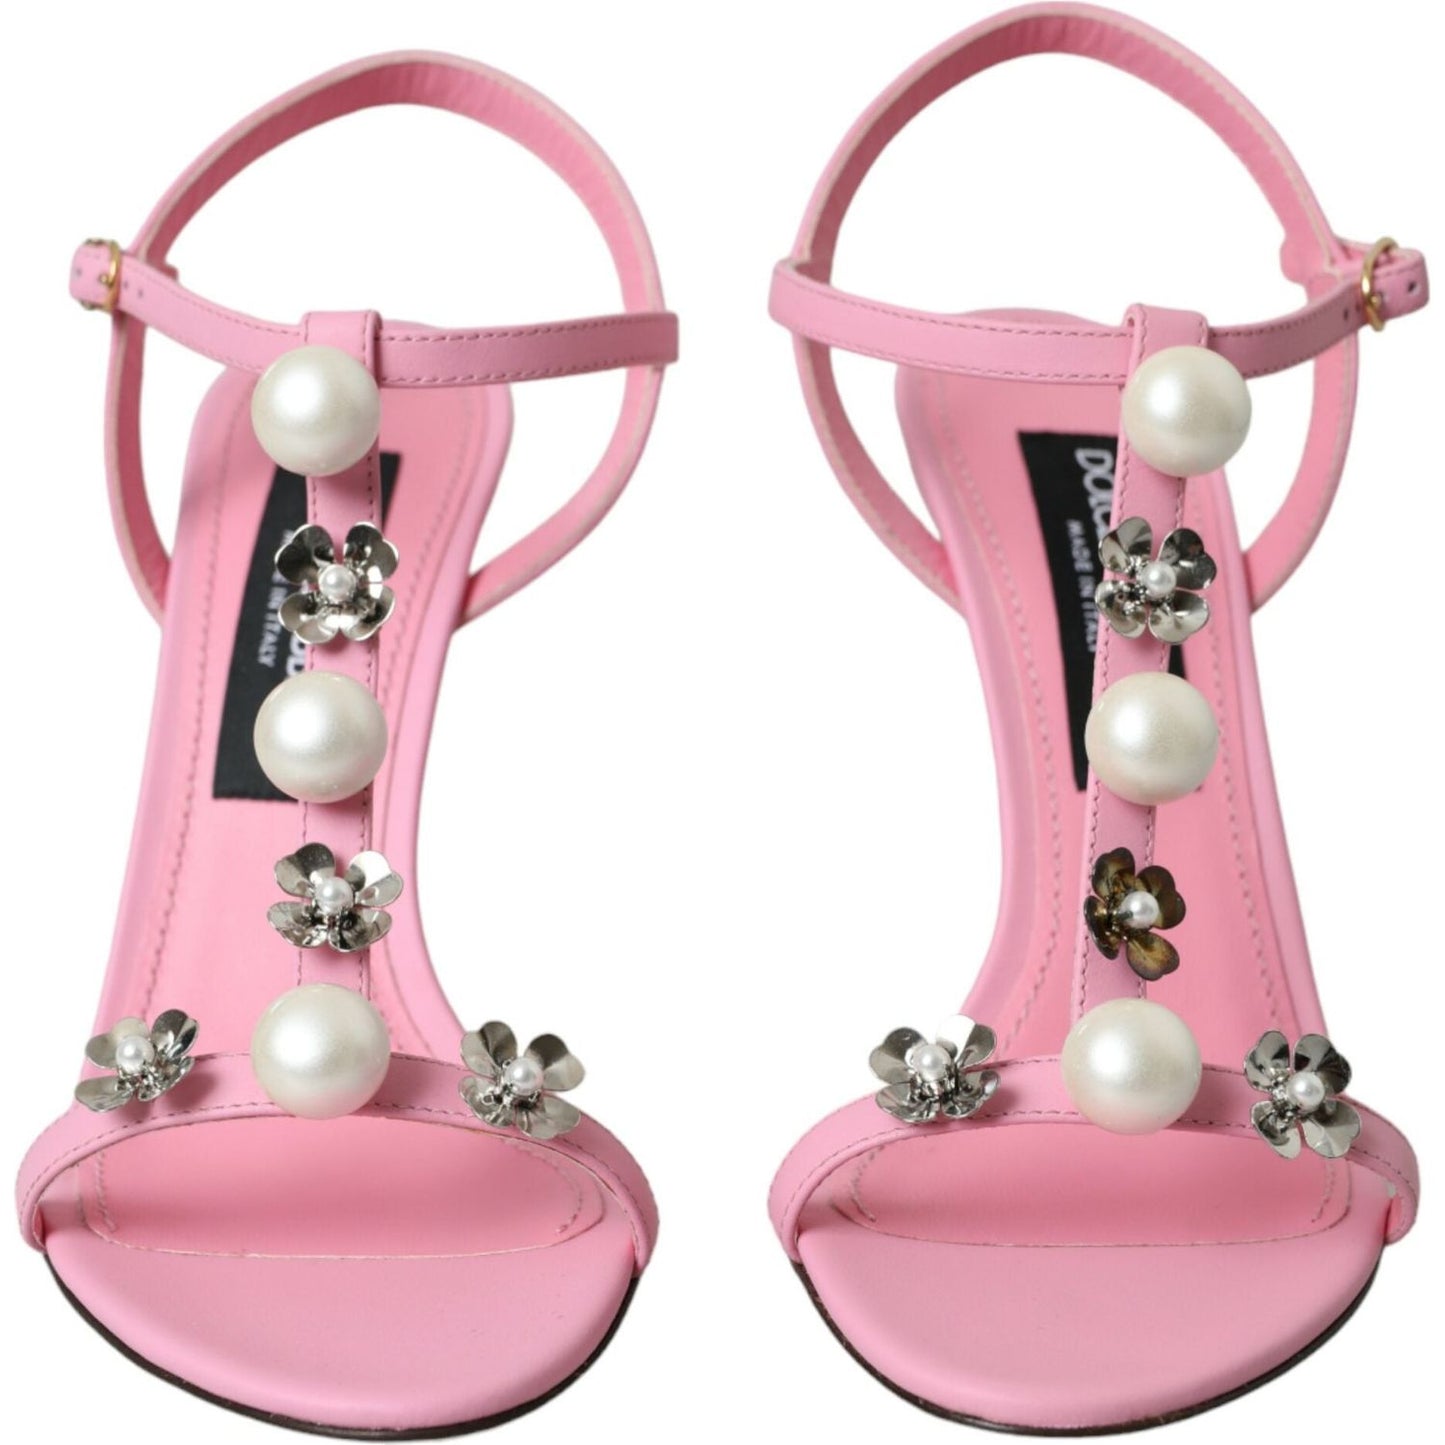 Dolce & Gabbana Pink Leather Embellished Heels Sandals Shoes pink-leather-embellished-heels-sandals-shoes